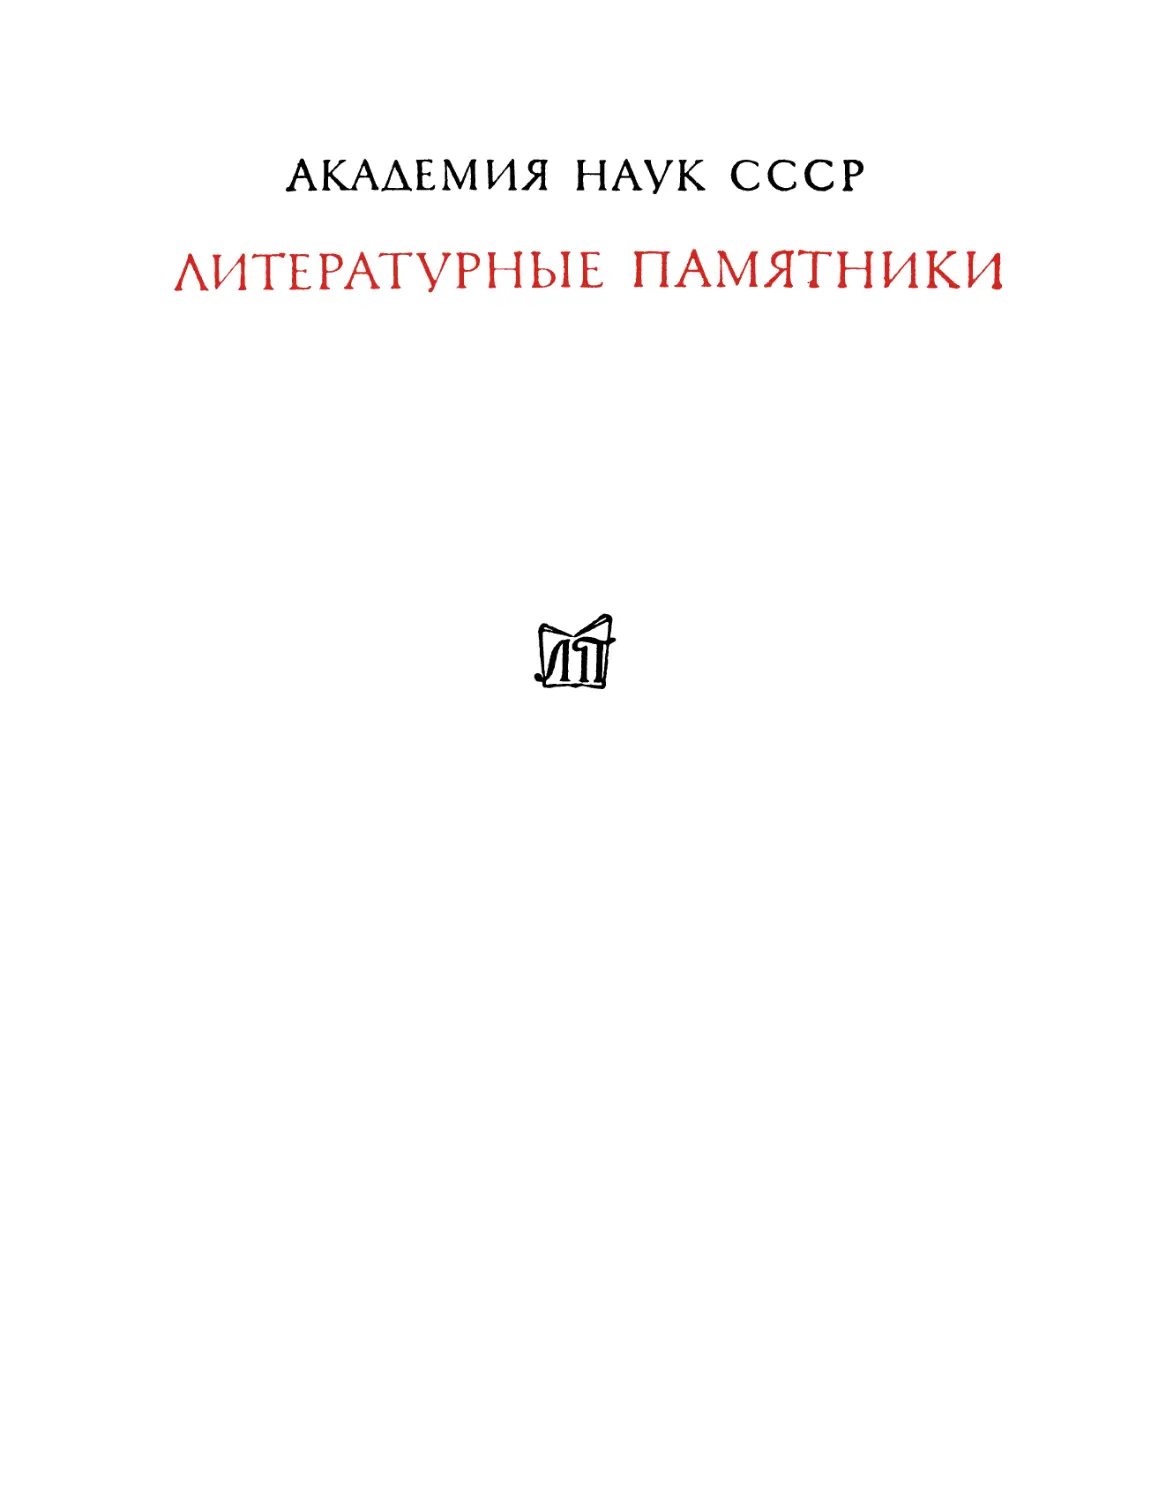 Андрей Белый. Петербург: роман в восьми главах с прологом и эпилогом – 1981